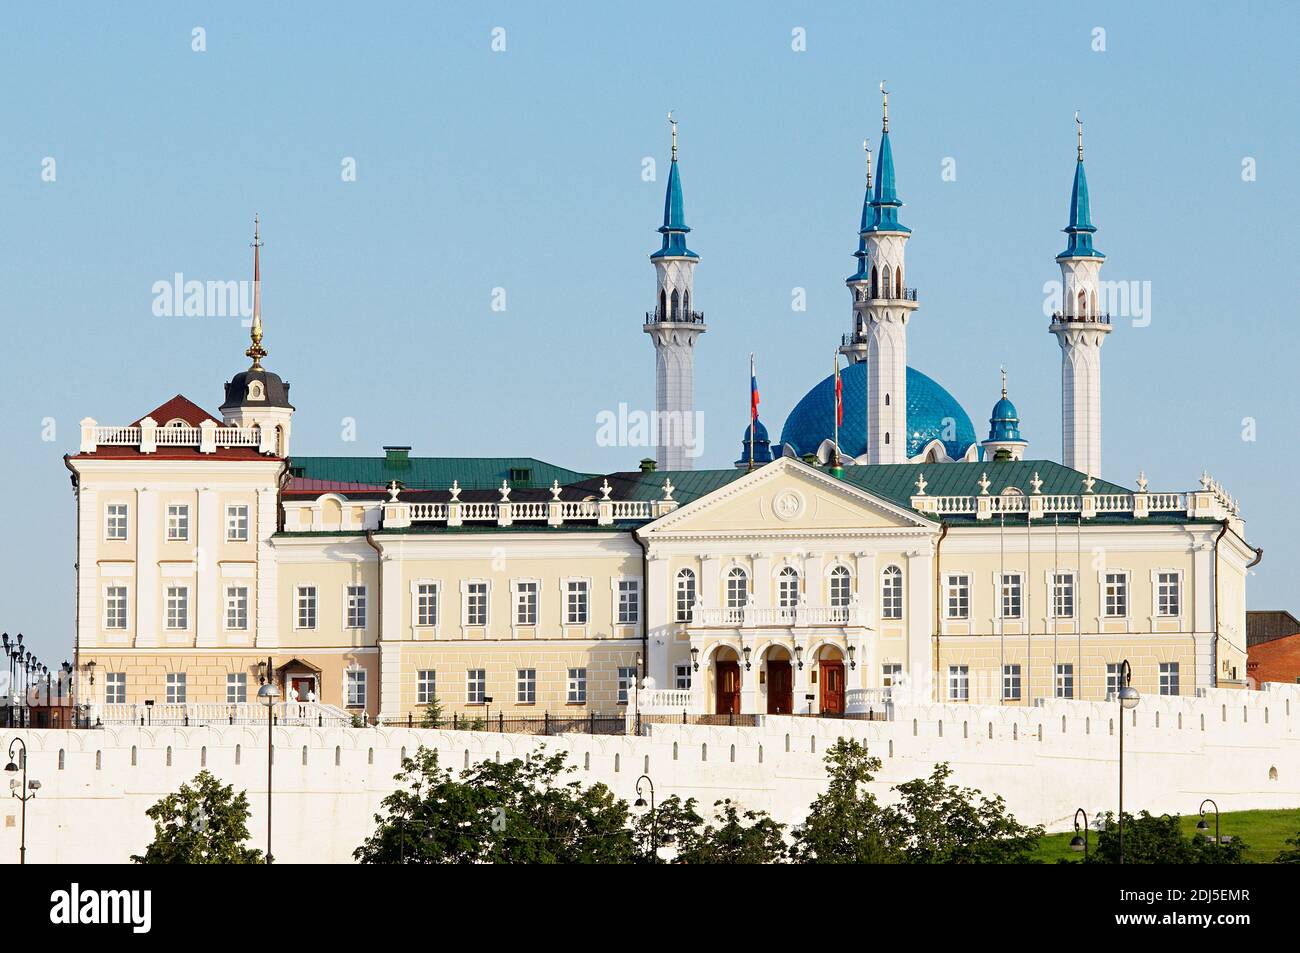 Russie, République du Tatarstan, ville de Kazan. Complexe historique et architectural du Kremlin de Kazan, patrimoine mondial de l'UNESCO. Banque D'Images